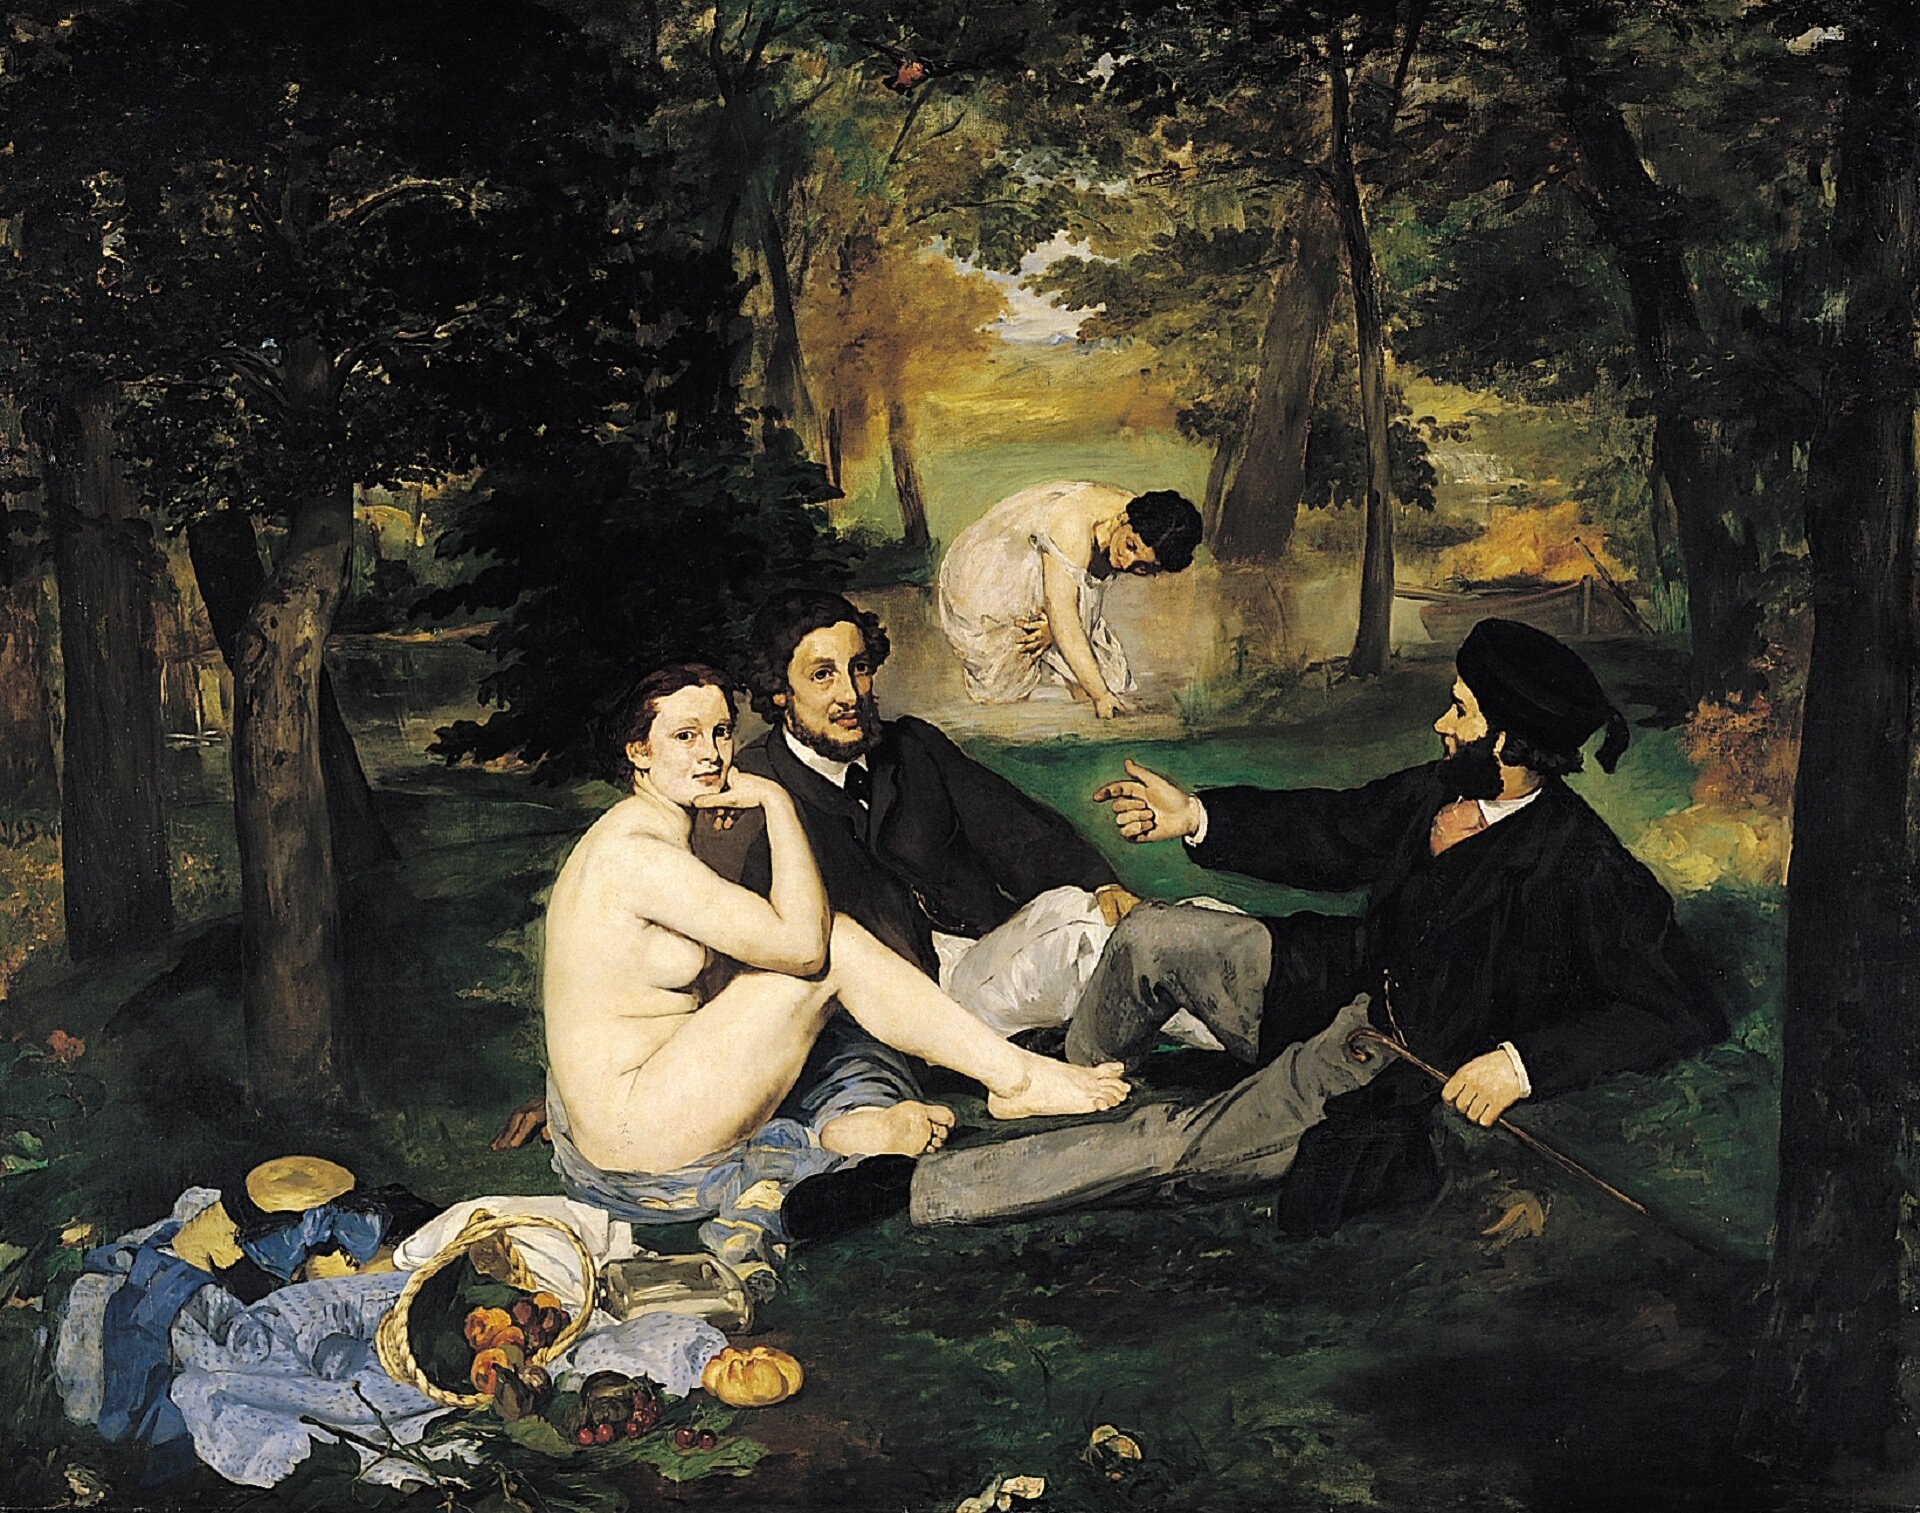 Ilustracja przedstawia obraz „Śniadanie na trawie”, autorstwa  Édouarda Maneta. W centrum horyzontalnej kompozycji ukazani zostali dwaj mężczyźni oraz naga kobieta, siedzący na leśnej polanie. Elegancko ubrani mężczyźni w czarnych frakach i jasnych spodniach, zajęci są rozmową. Zupełnie nie zwracają uwagi na siedzącą obok nich kobietę. Ona również nie jest nimi zainteresowana. Z lekkim uśmiechem spogląda w stronę odbiorcy dzieła. Prawą rękę opiera na kolanie, podpierając dłonią brodę. Mężczyzna siedzący z prawej strony ma na głowie czapkę. W prawej ręce trzyma laskę. Lewą dłoń ma skierowaną w kierunku mężczyzny siedzącego obok. Po prawej stronie kobiety znajduje się kosz z jedzeniem i rozrzucone ubrania. W oddali widoczna jest zanurzona do kolan w rzece nimfa, ubrana w długą, białą suknię. Ciemnowłosa kobieta schyla się ku tafli wody. Dzieło utrzymane jest w ciemnej, chłodnej gamie barw z dominacją zieleni. Wyraźnym akcentem w kompozycji jest jasna plama nagiego ciała siedzącej kobiety.